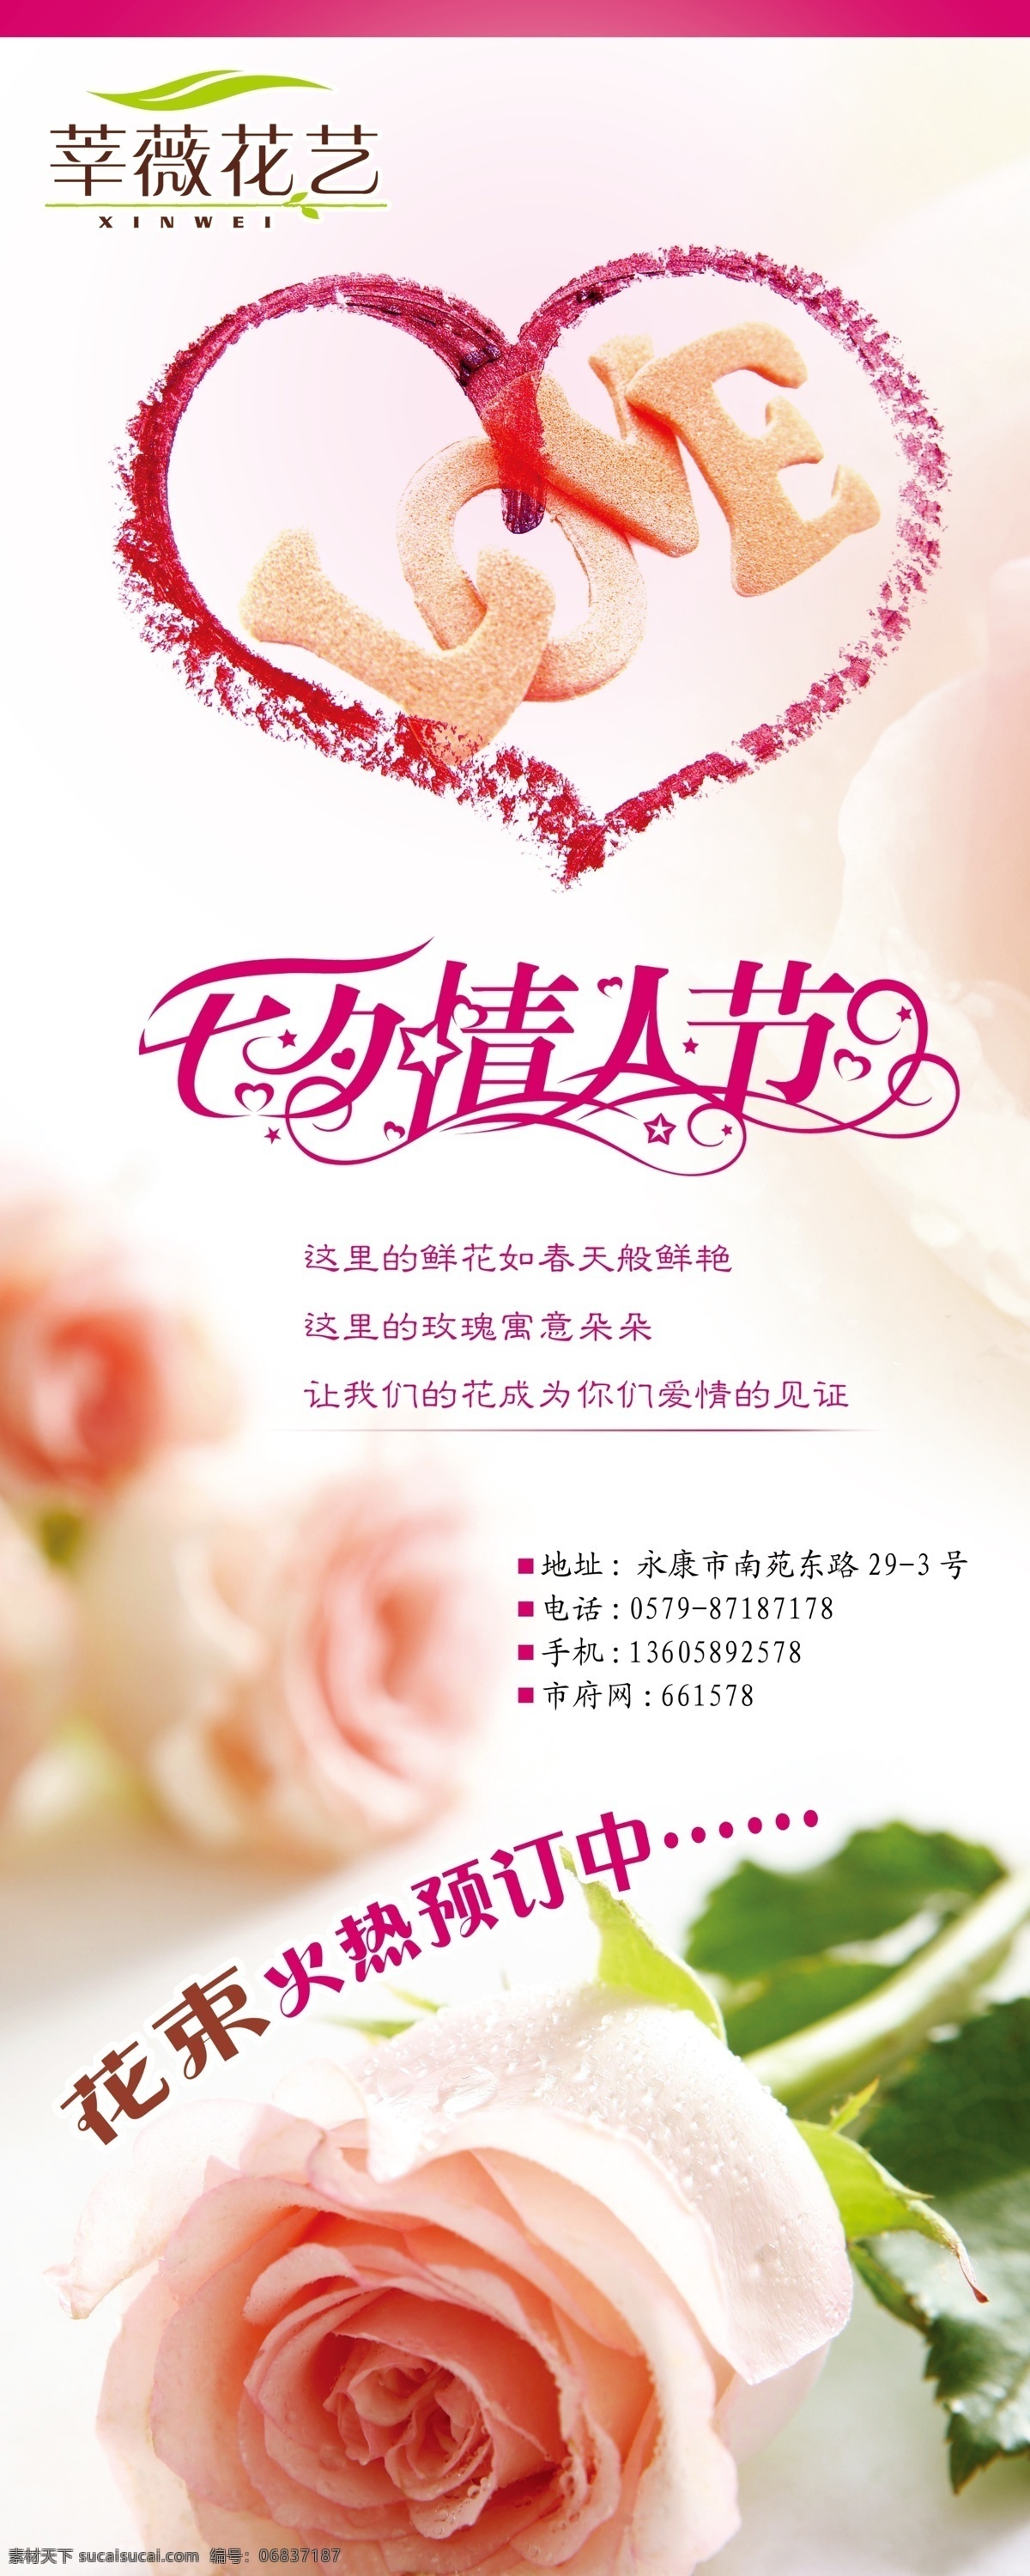 情人节展架 心形 情人节 字体样式 花朵 玫瑰 背景颜色 展板模板